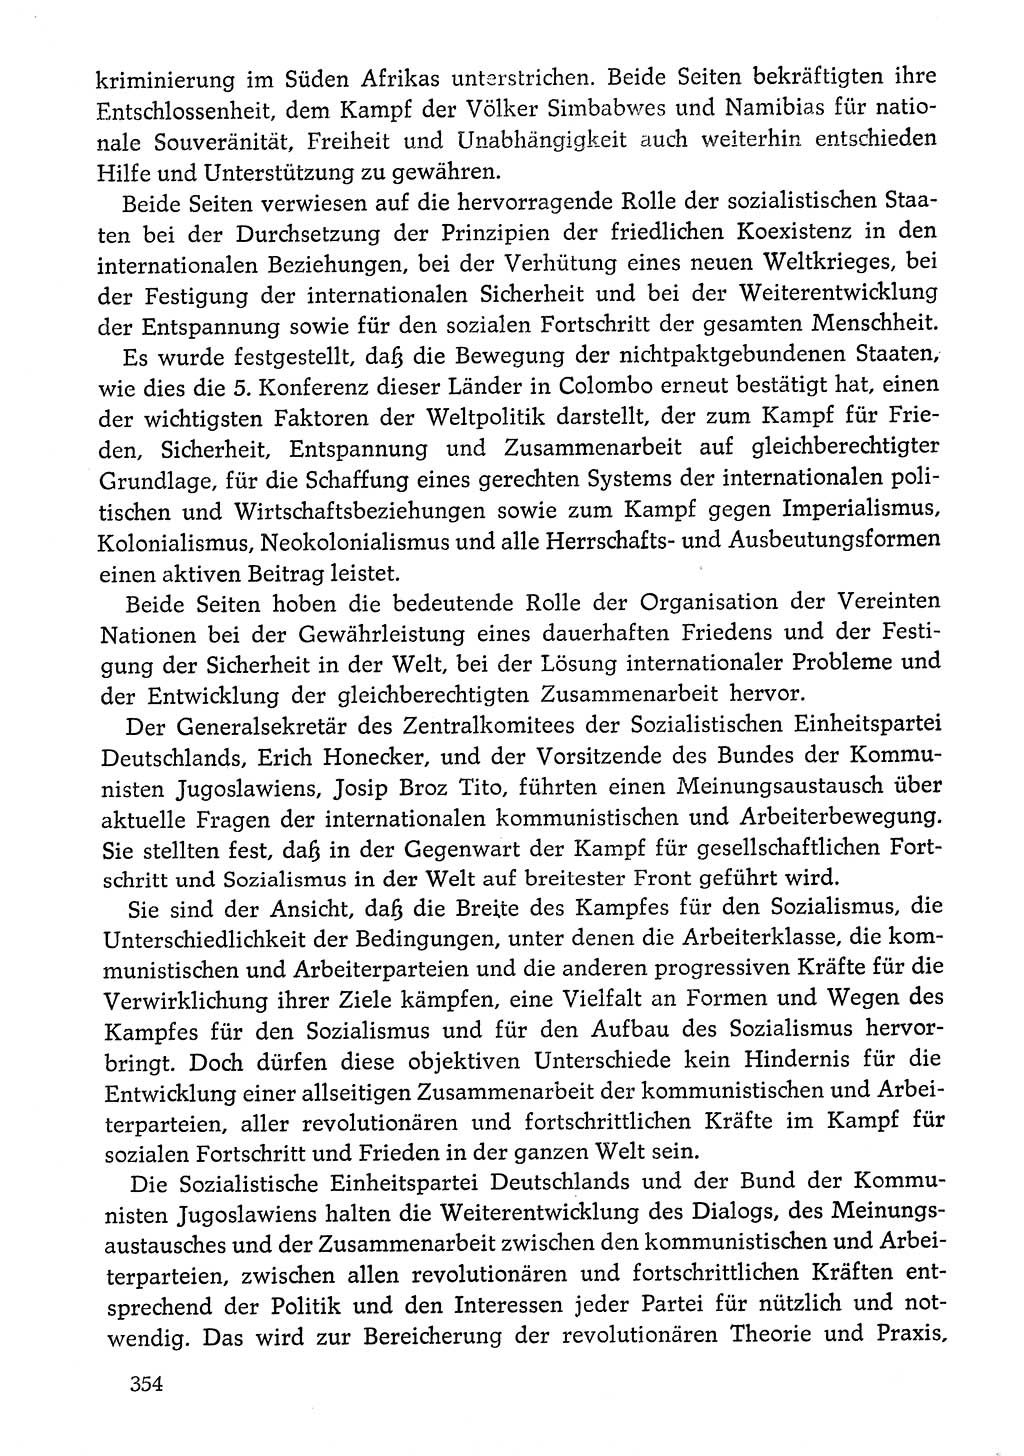 Dokumente der Sozialistischen Einheitspartei Deutschlands (SED) [Deutsche Demokratische Republik (DDR)] 1976-1977, Seite 354 (Dok. SED DDR 1976-1977, S. 354)